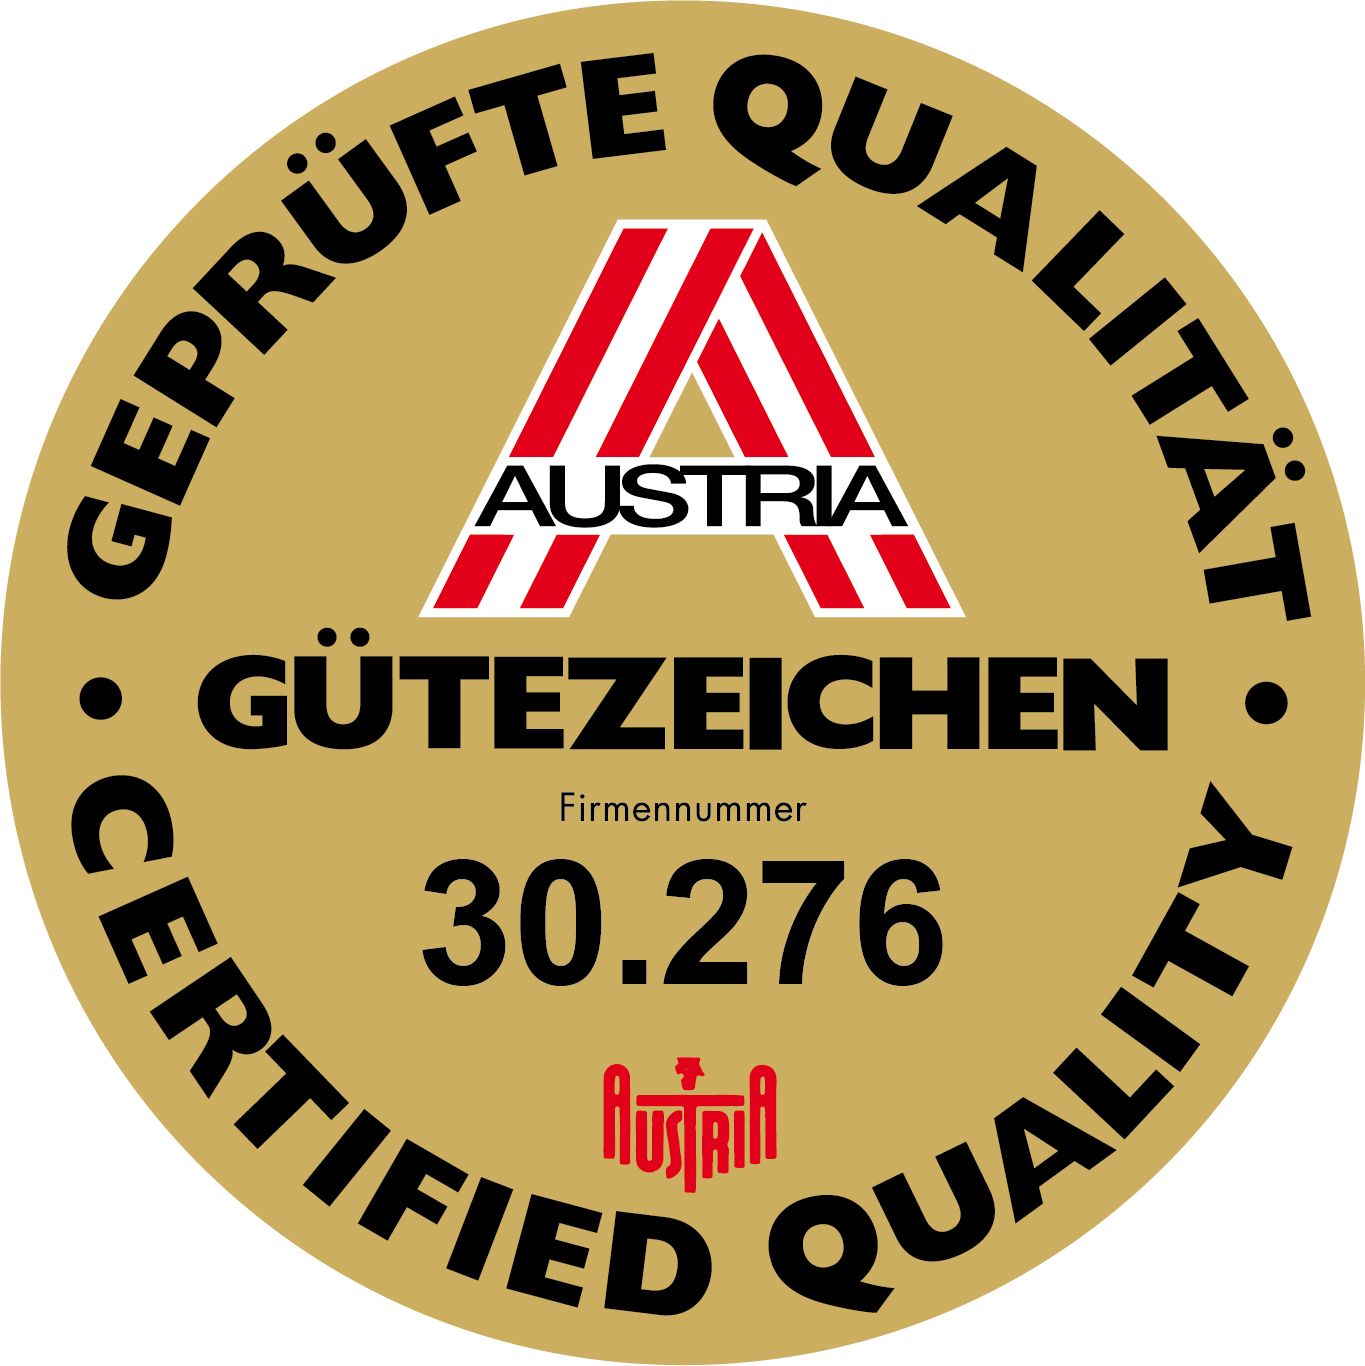 Austria Quality Seal No. 30.276